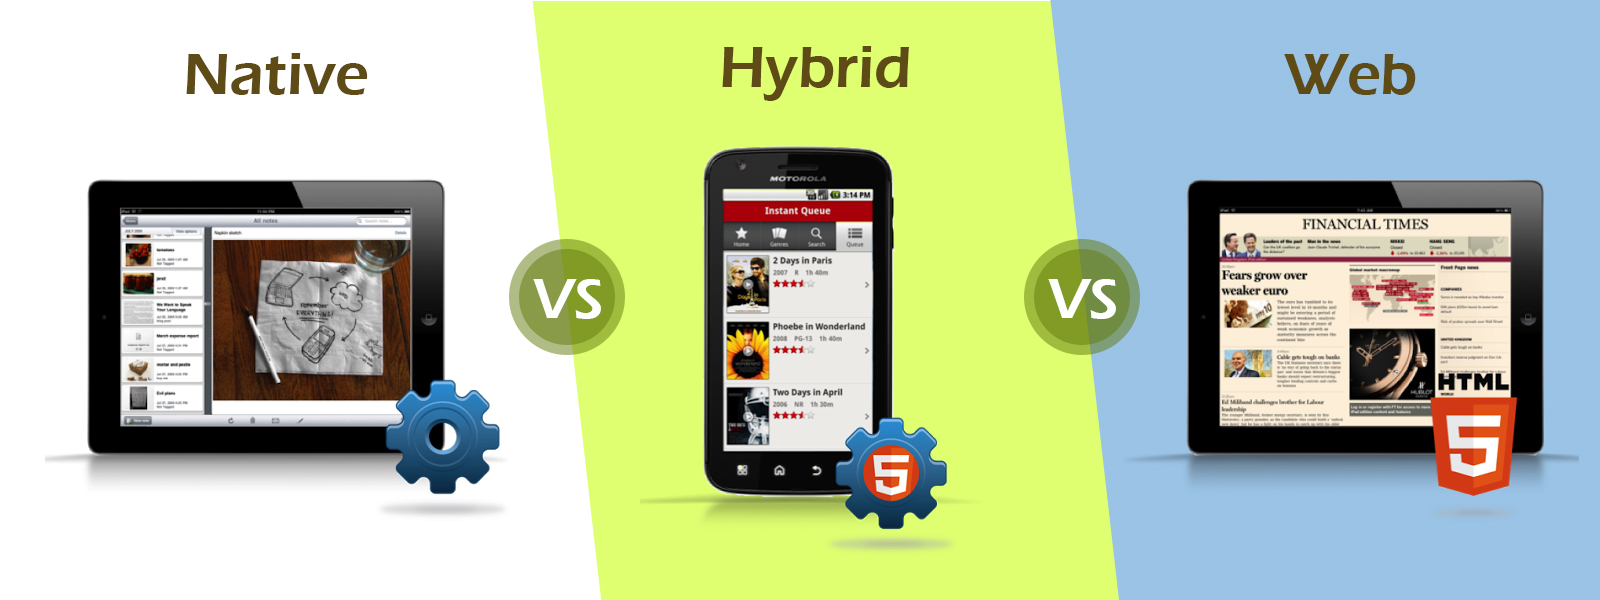 Hybrid App vs Native App vs Web App